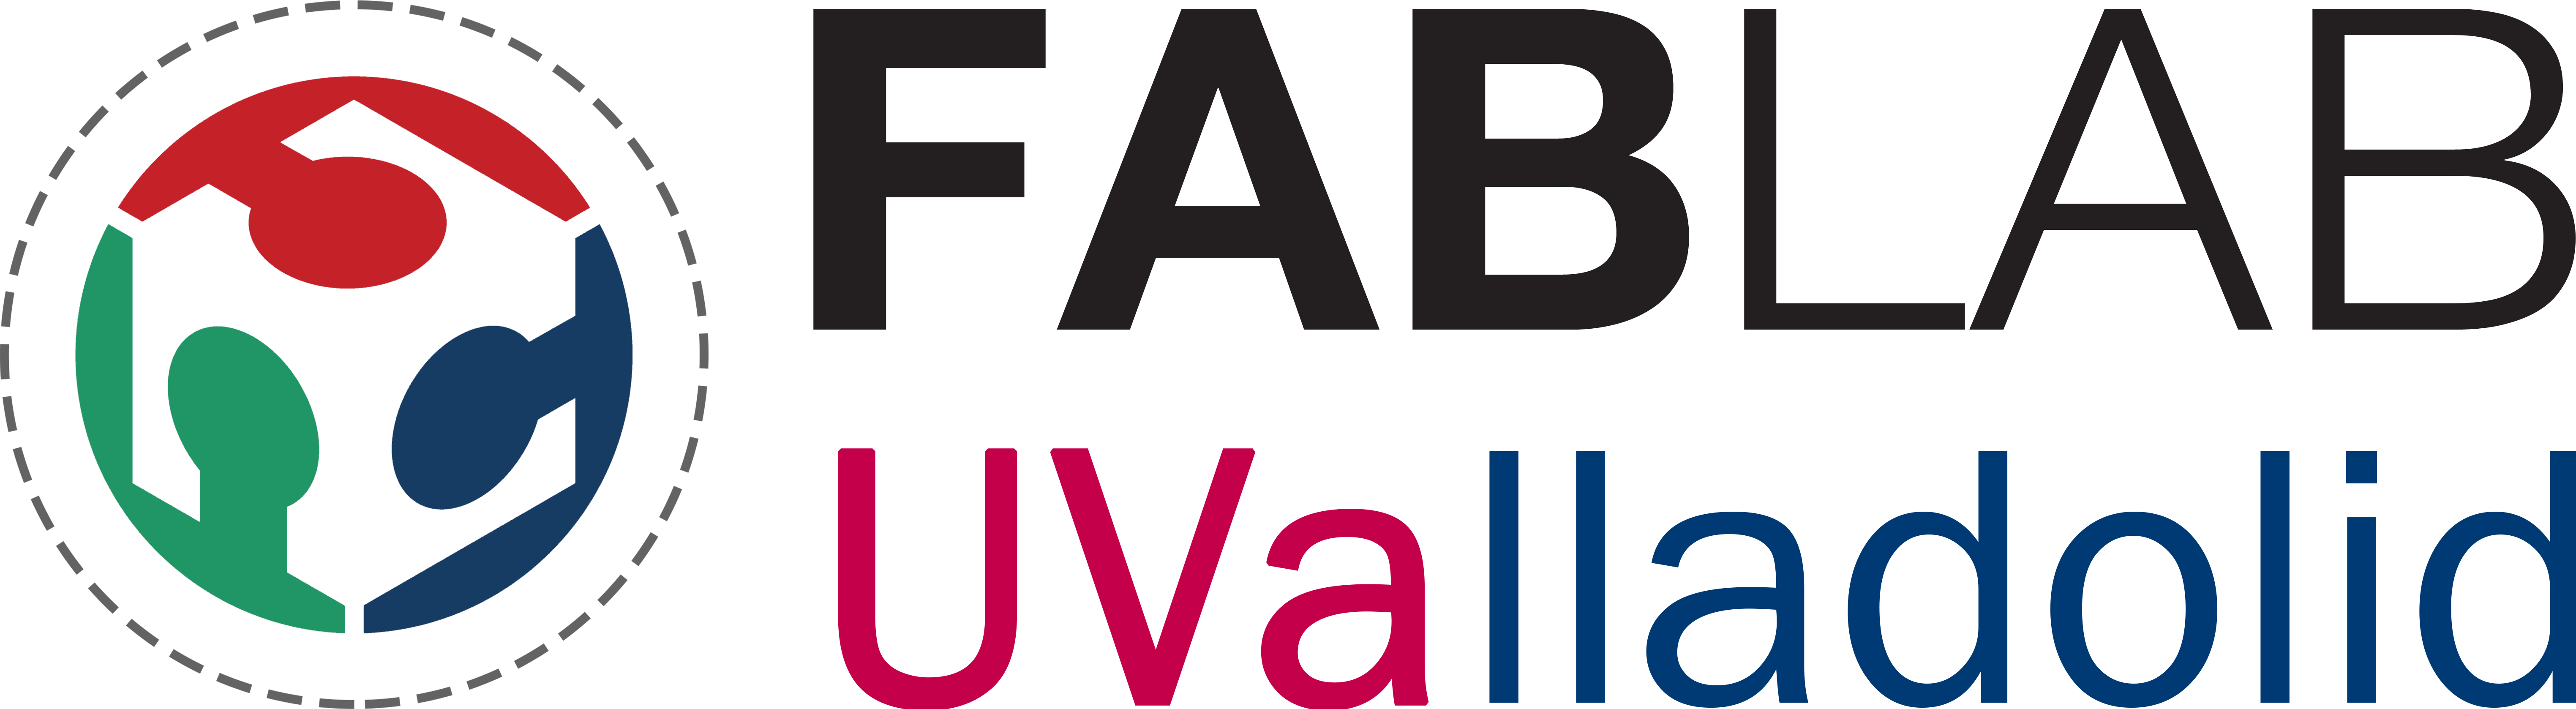 FABLAB UVa - Universidad de Valladolid